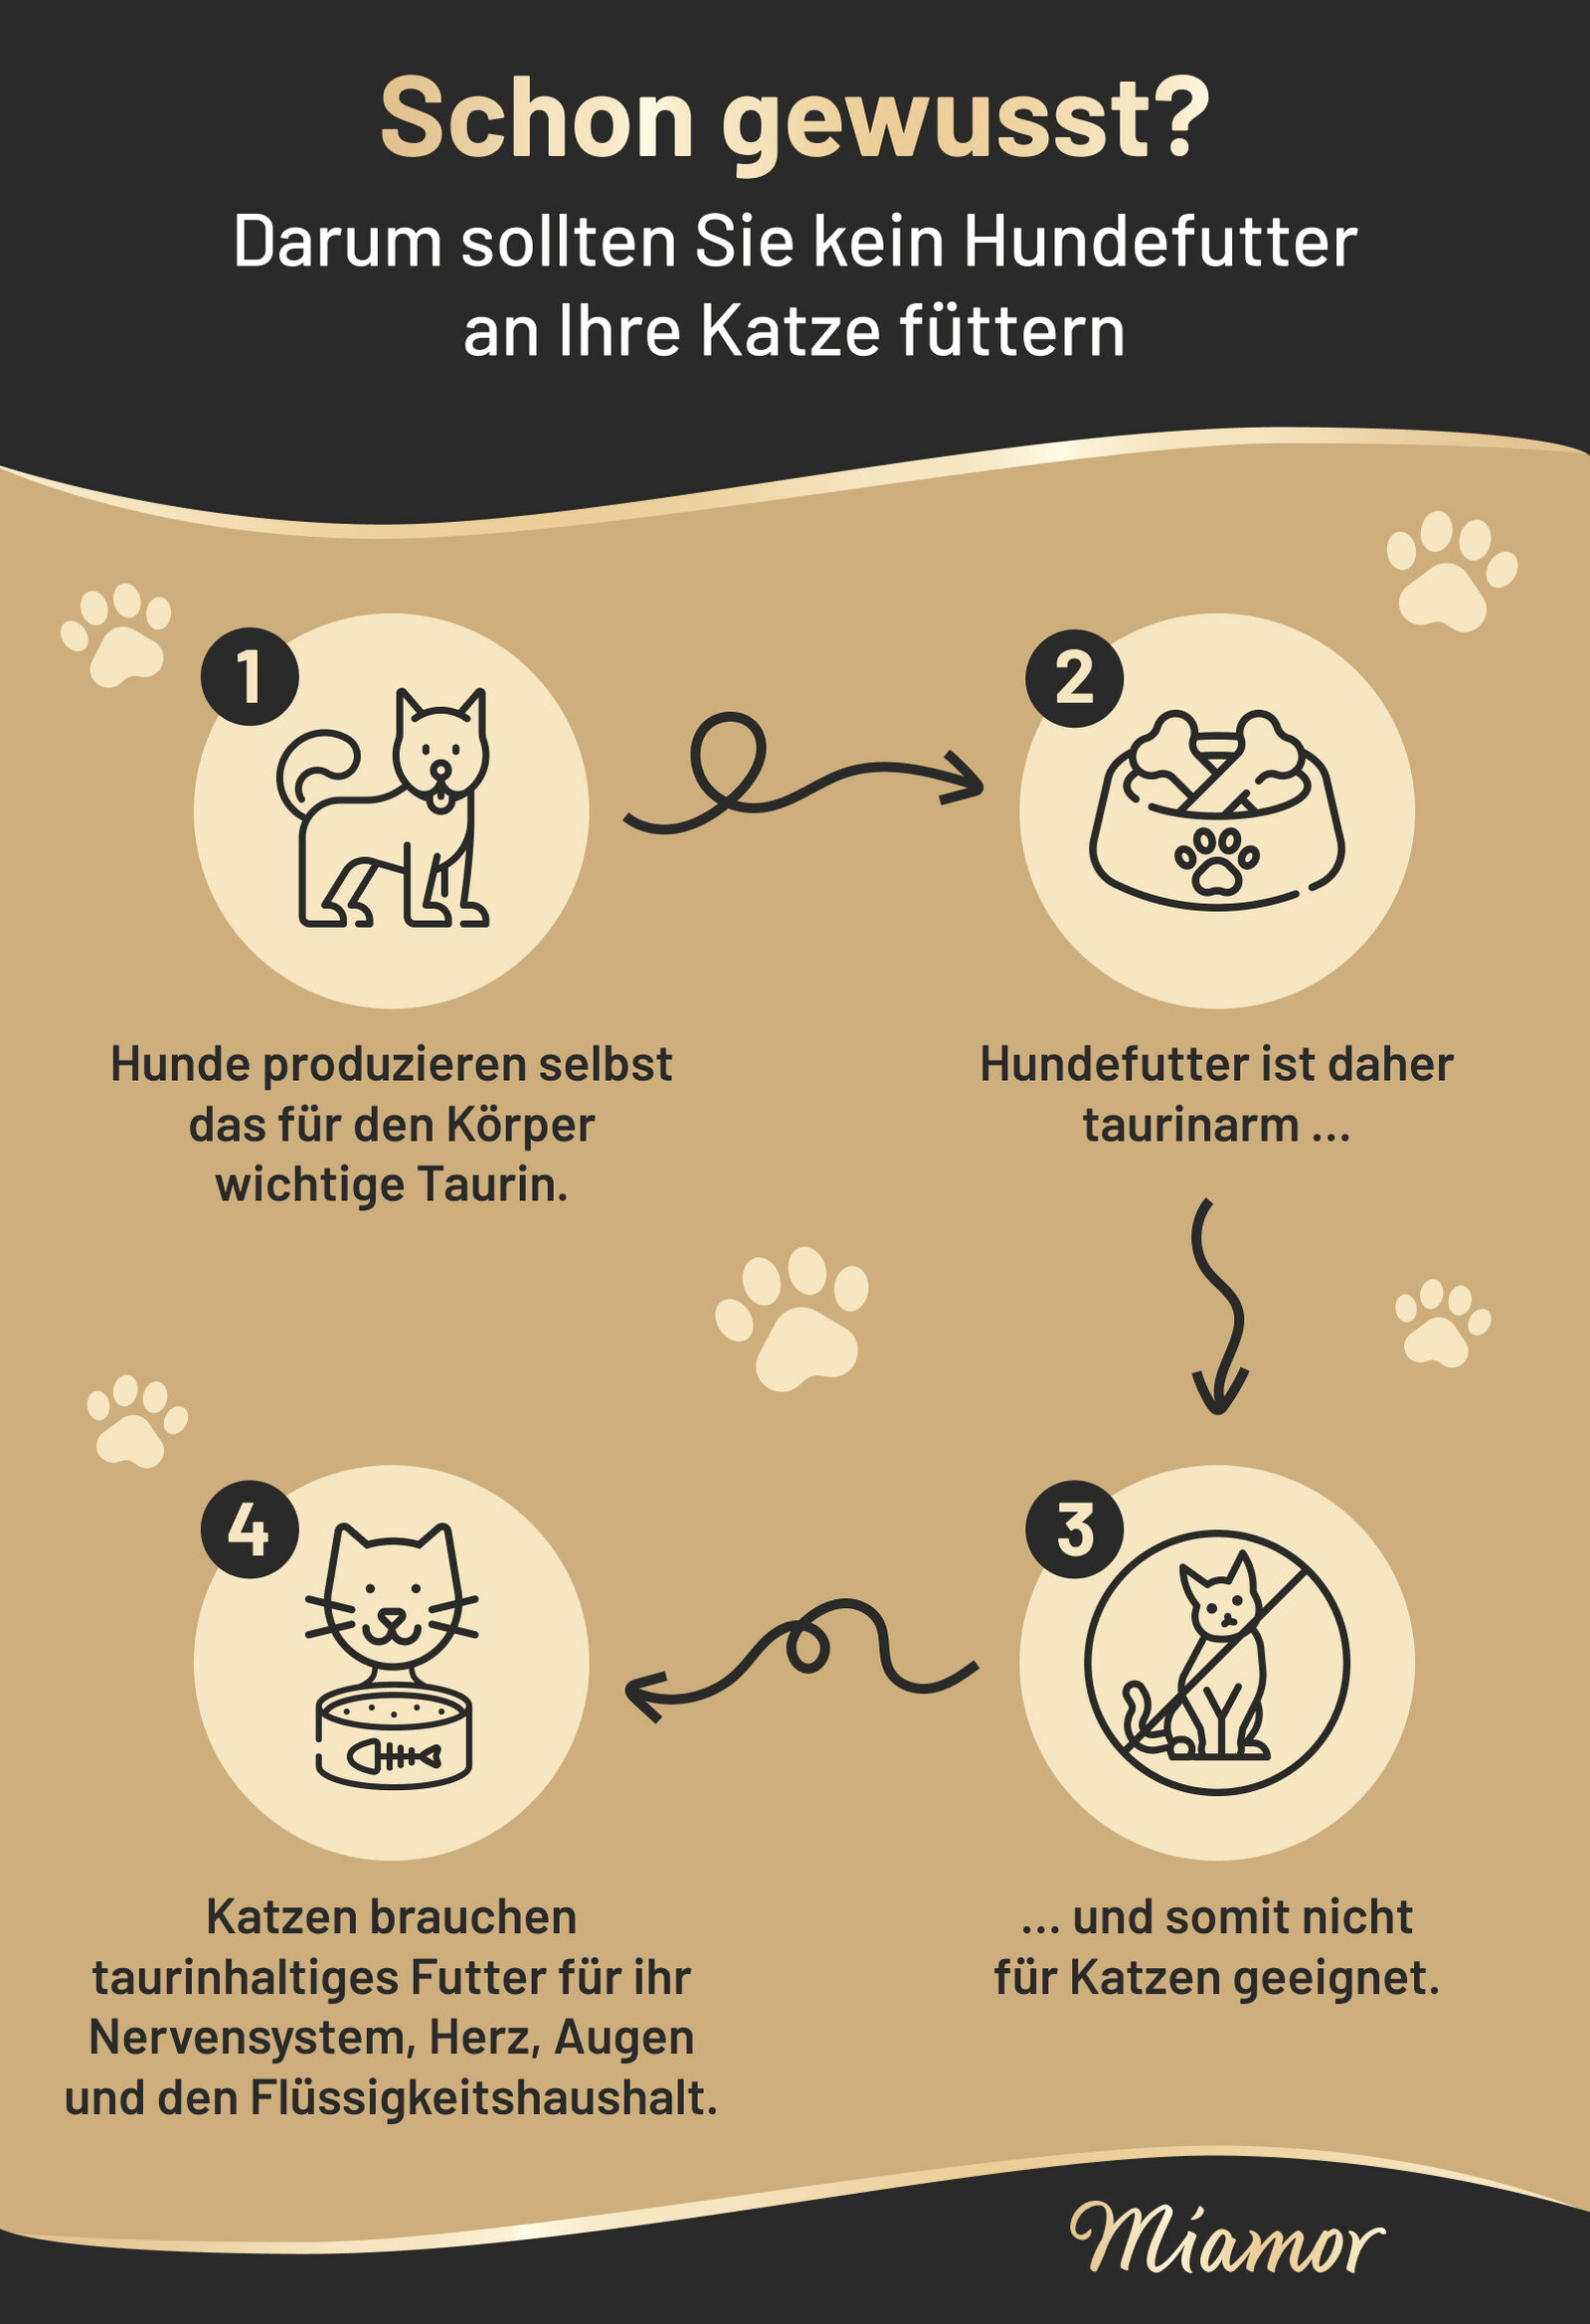 Infografik "Taurin für Katzen" von Miamor